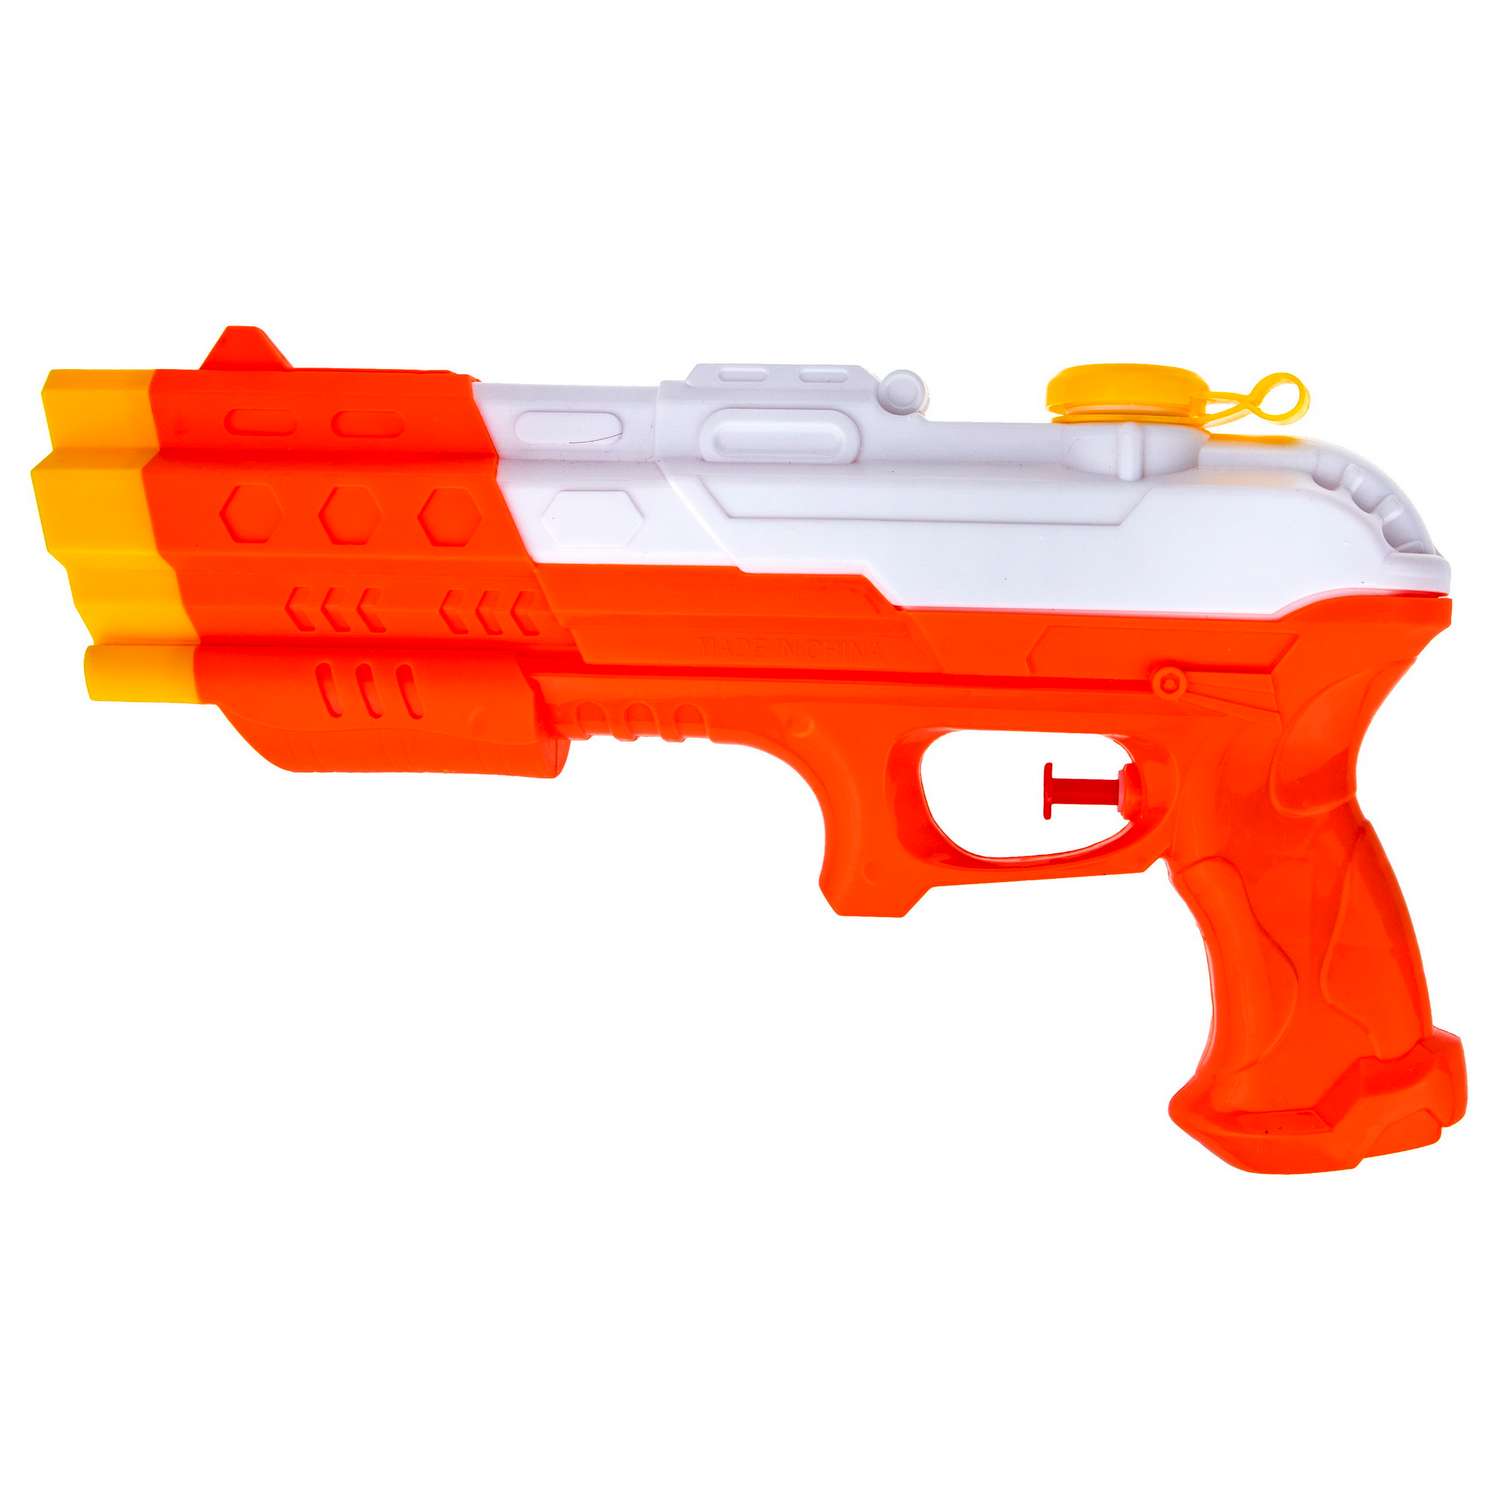 Водное оружие Aqua мания Пистолет оранжево-белый - фото 1